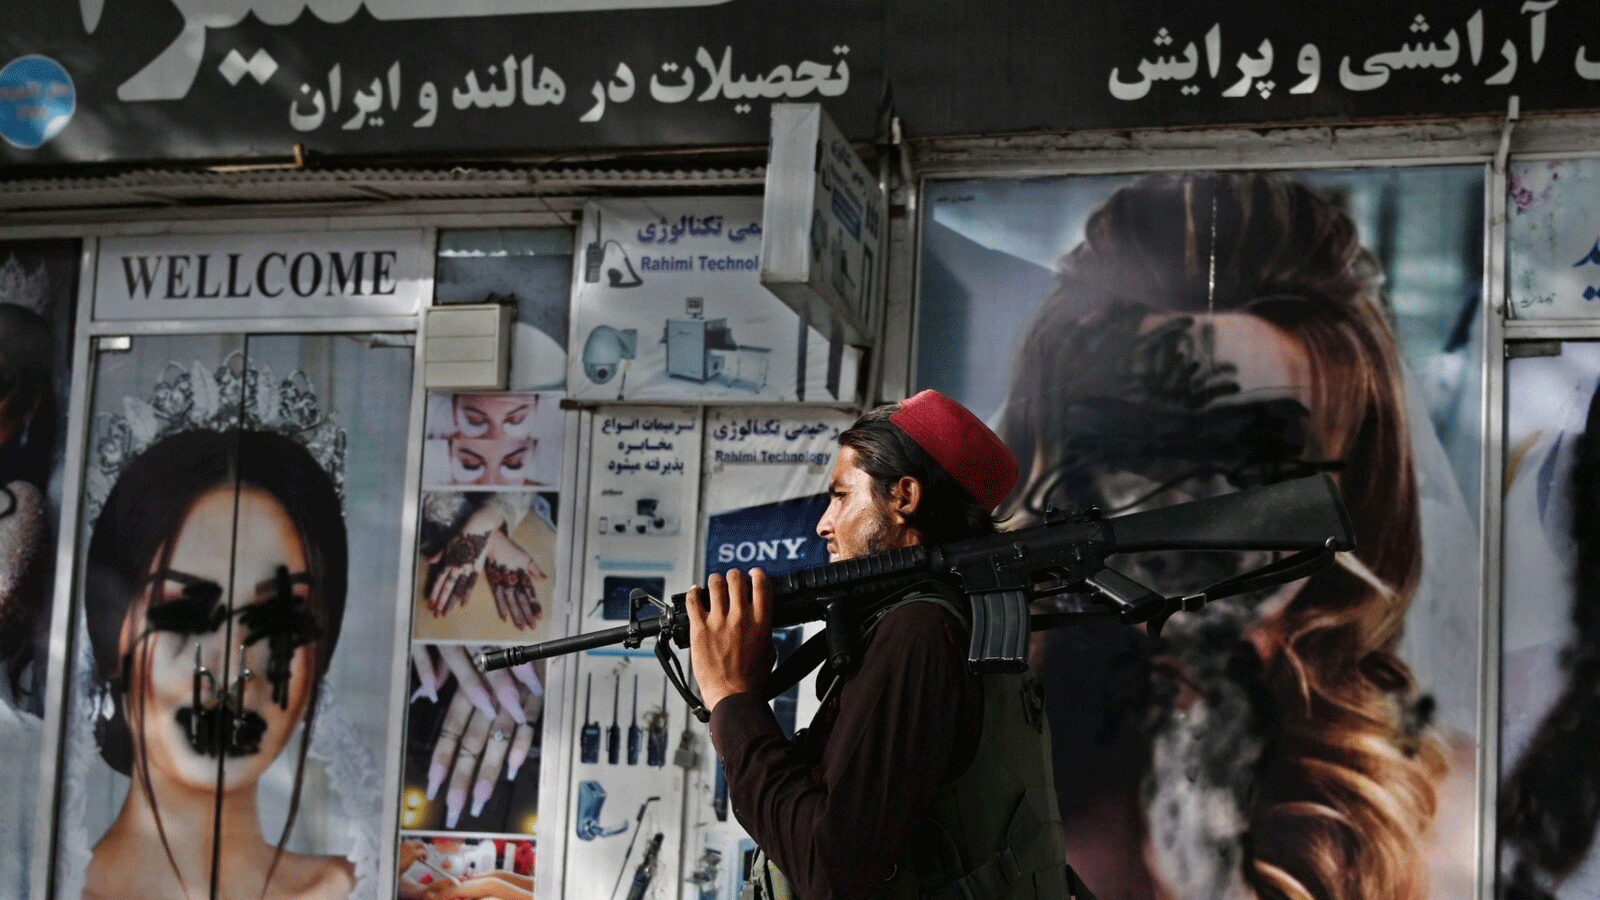 طالبان تُغلِق صالونات التجميل في كابول ومدن أفغانية أخرى بعد انسحاب القوات الأميركية وعودتها للحكم